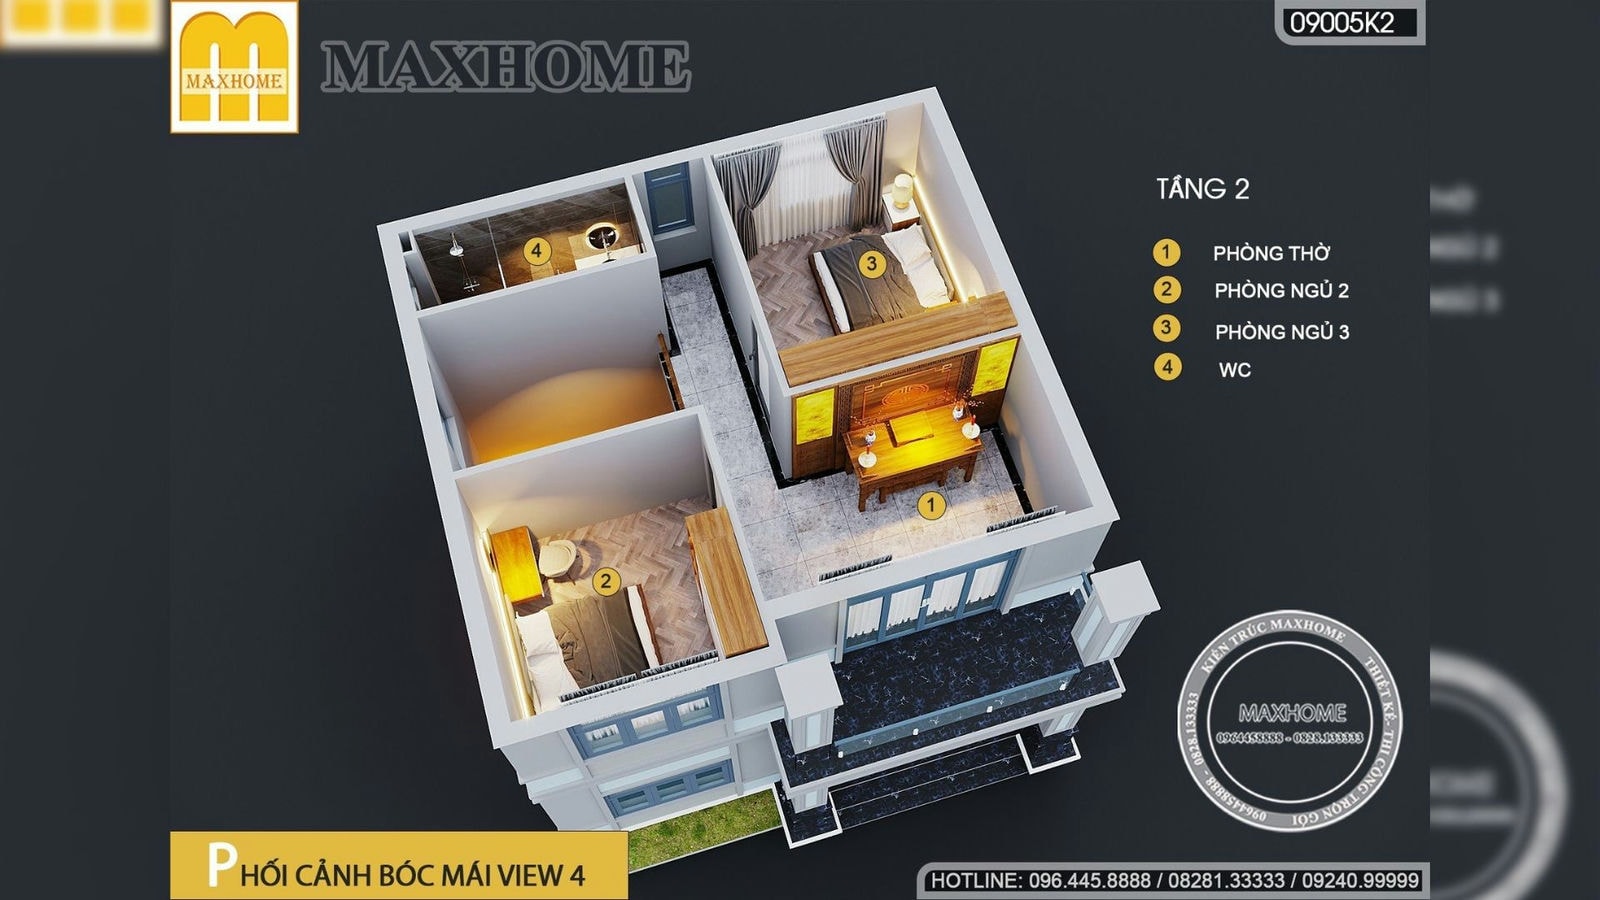 Nhà 2 tầng 3 phòng ngủ nhỏ xinh với chi phí chỉ từ 1,3 tỷ đồng | MH02051